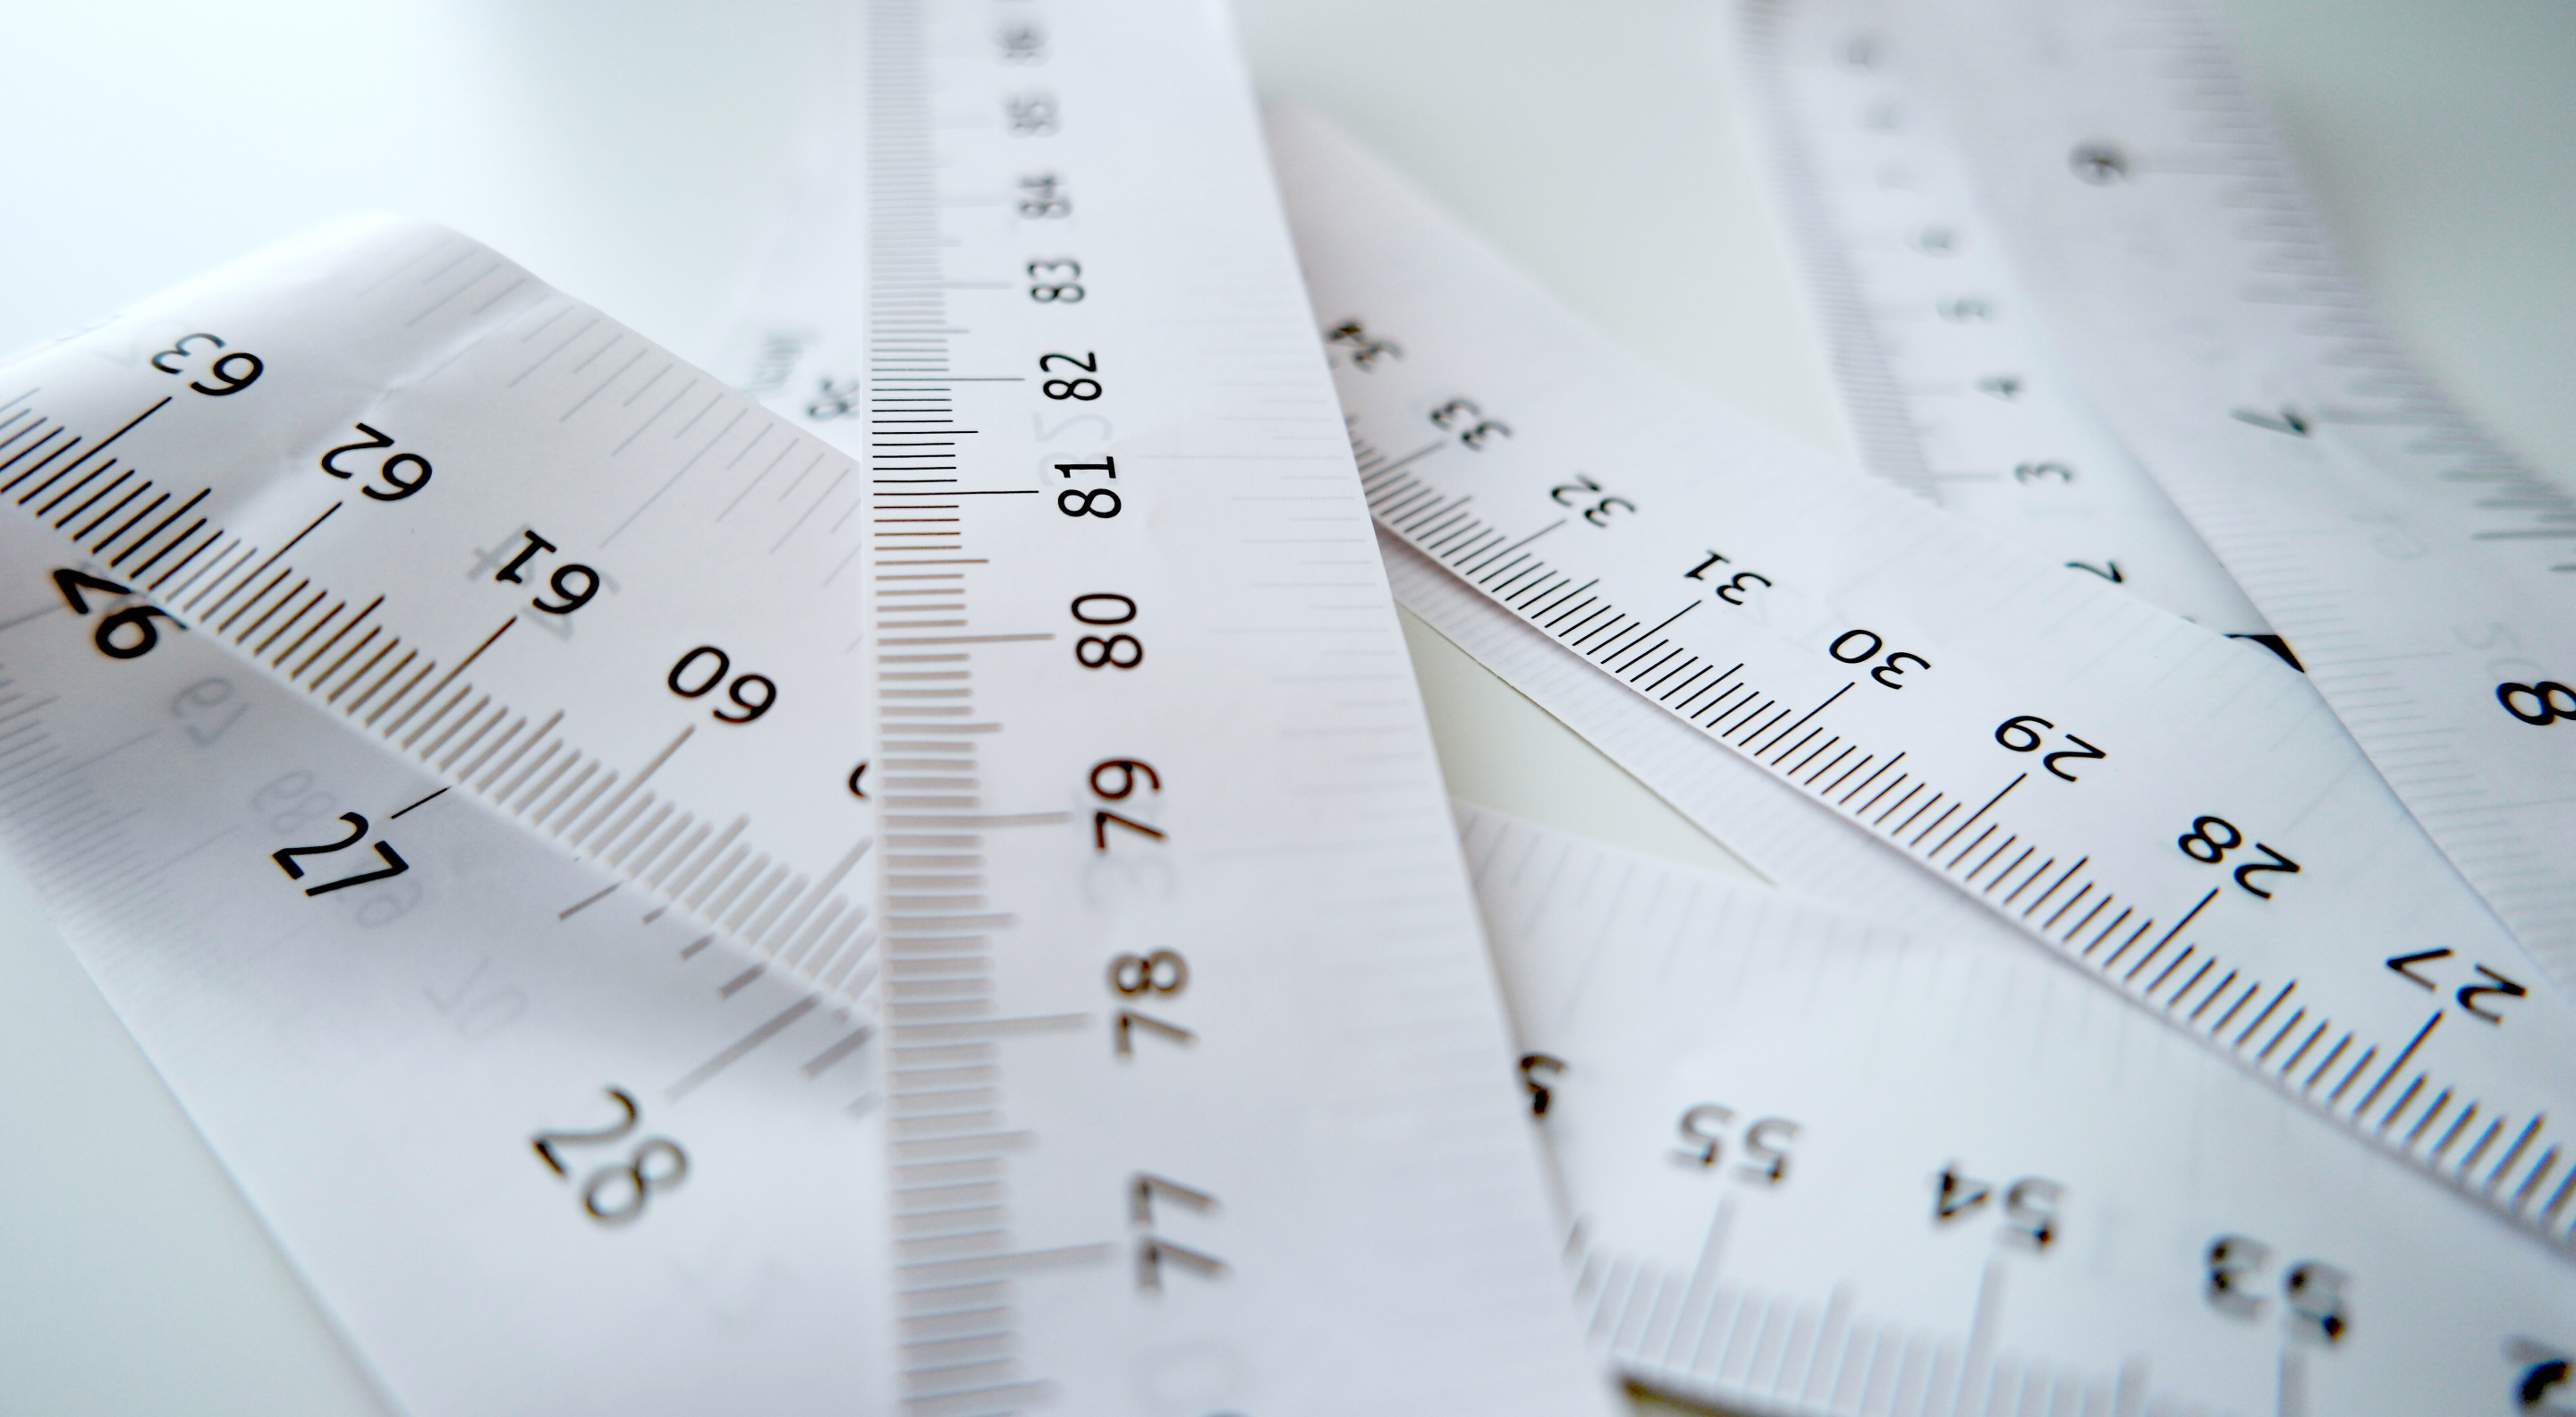 De Waist-to-Height Ratio is de verhouding tussen de tailleomtrek en de lichaamslengte. Vergeleken met de Body Mass Index (BMI) wordt deze geacht een betere uitspraak te doen over de verdeling van lichaamsvet.